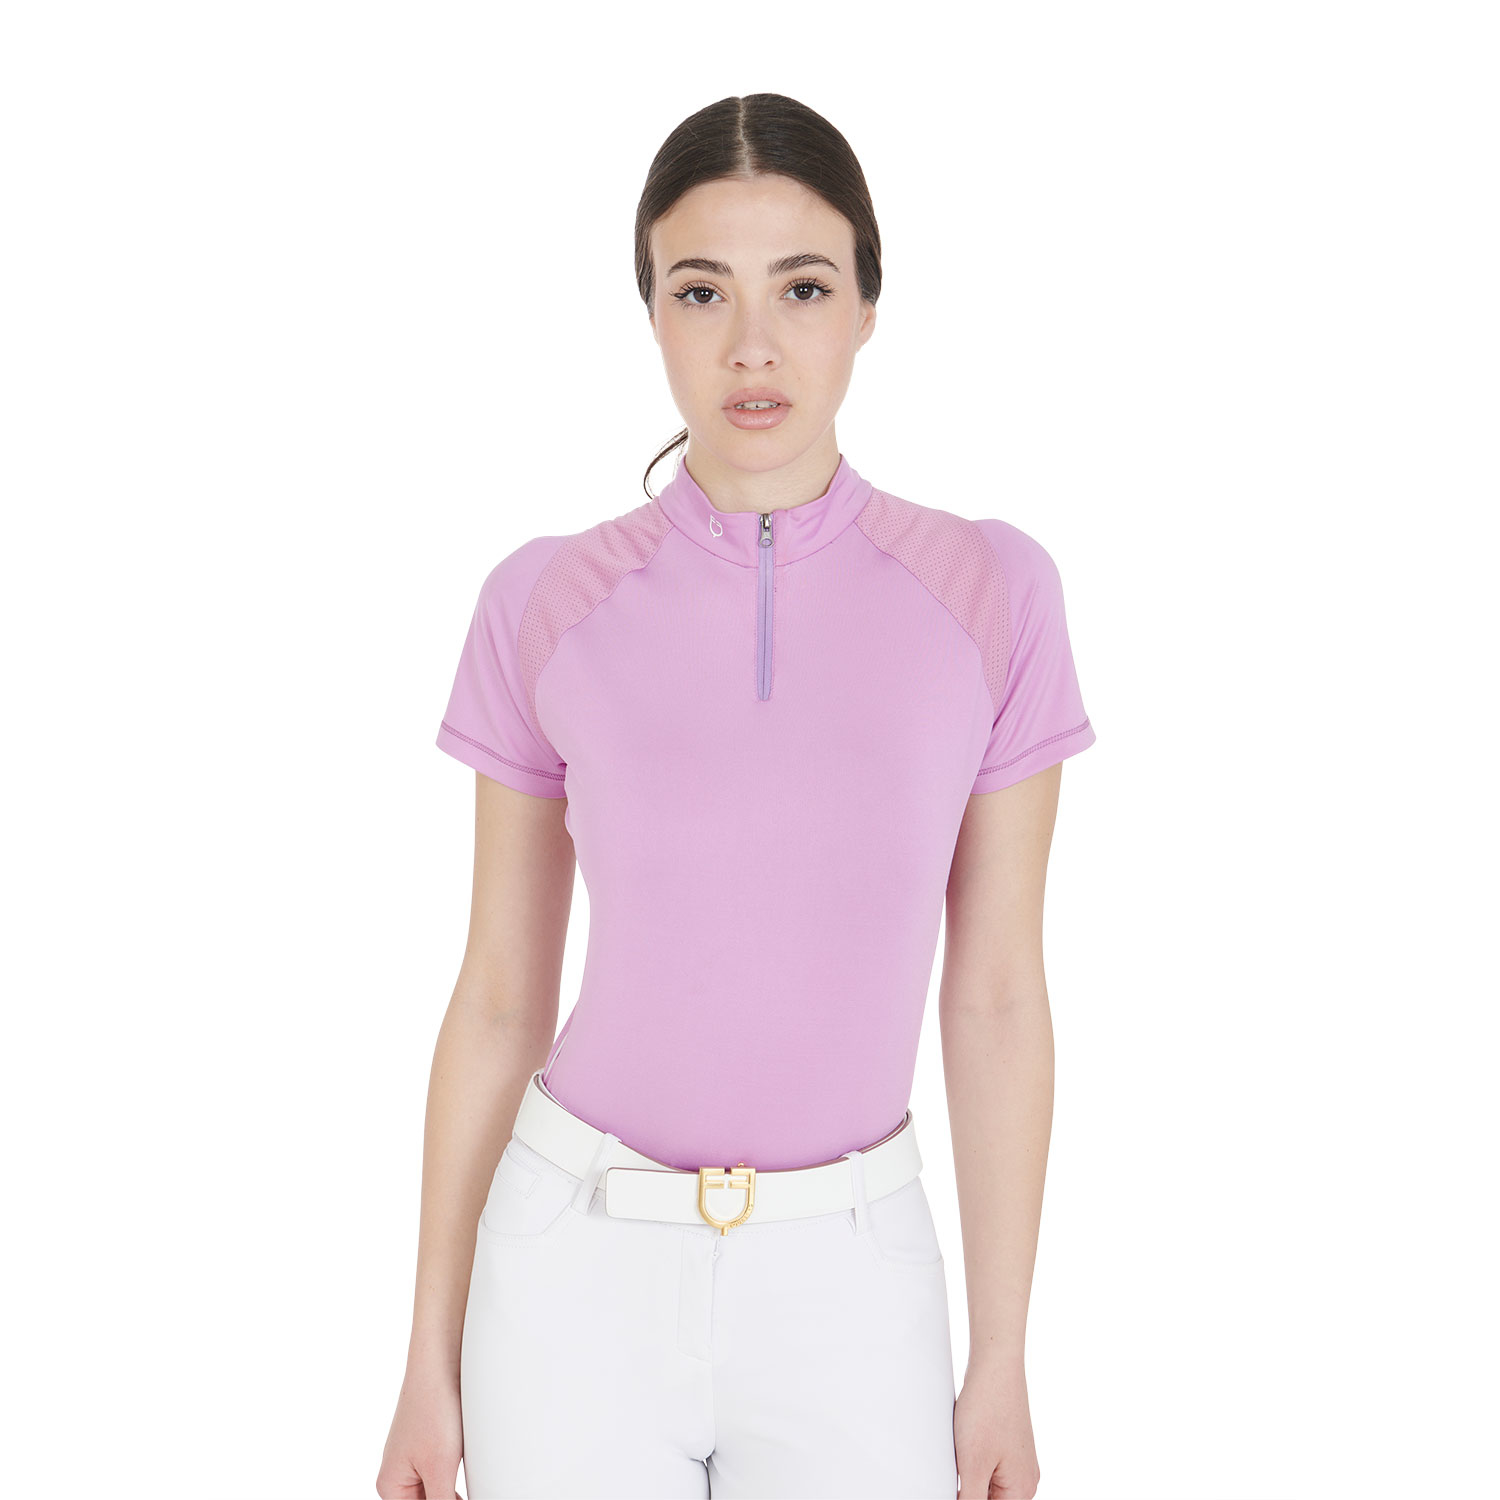 Lauria Garrelli edles feminines sportliches Damen Poloshirt in 2 Farben 